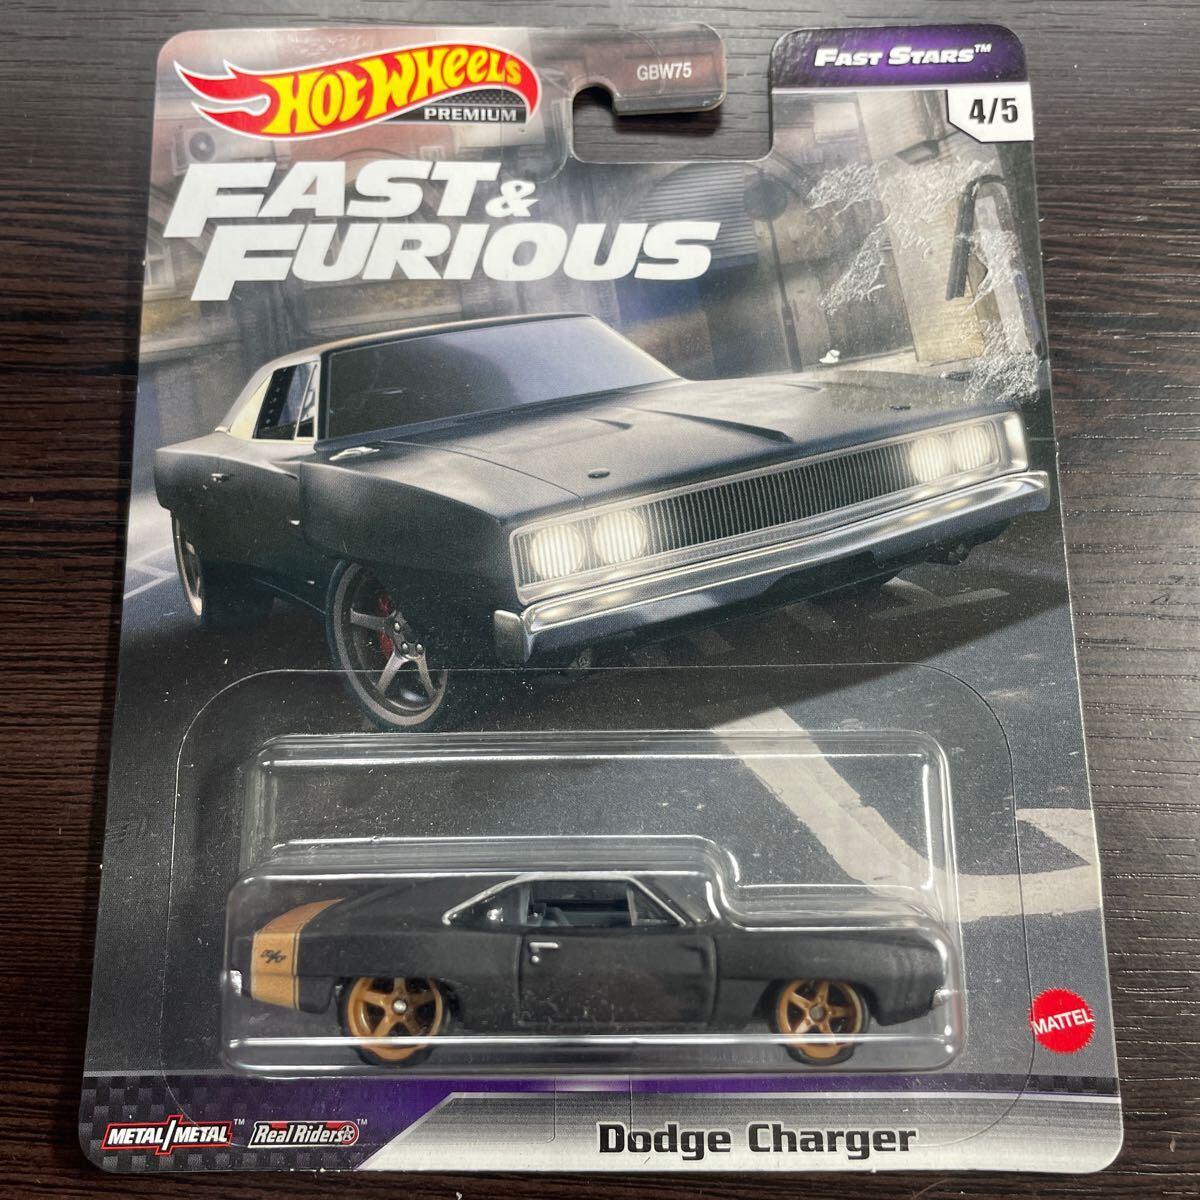 新品未開封 ホットウィール プレミアム ワイルドスピード Dodge Charger ダッジ チャージャー Hot Wheels Premium Fast & Furious